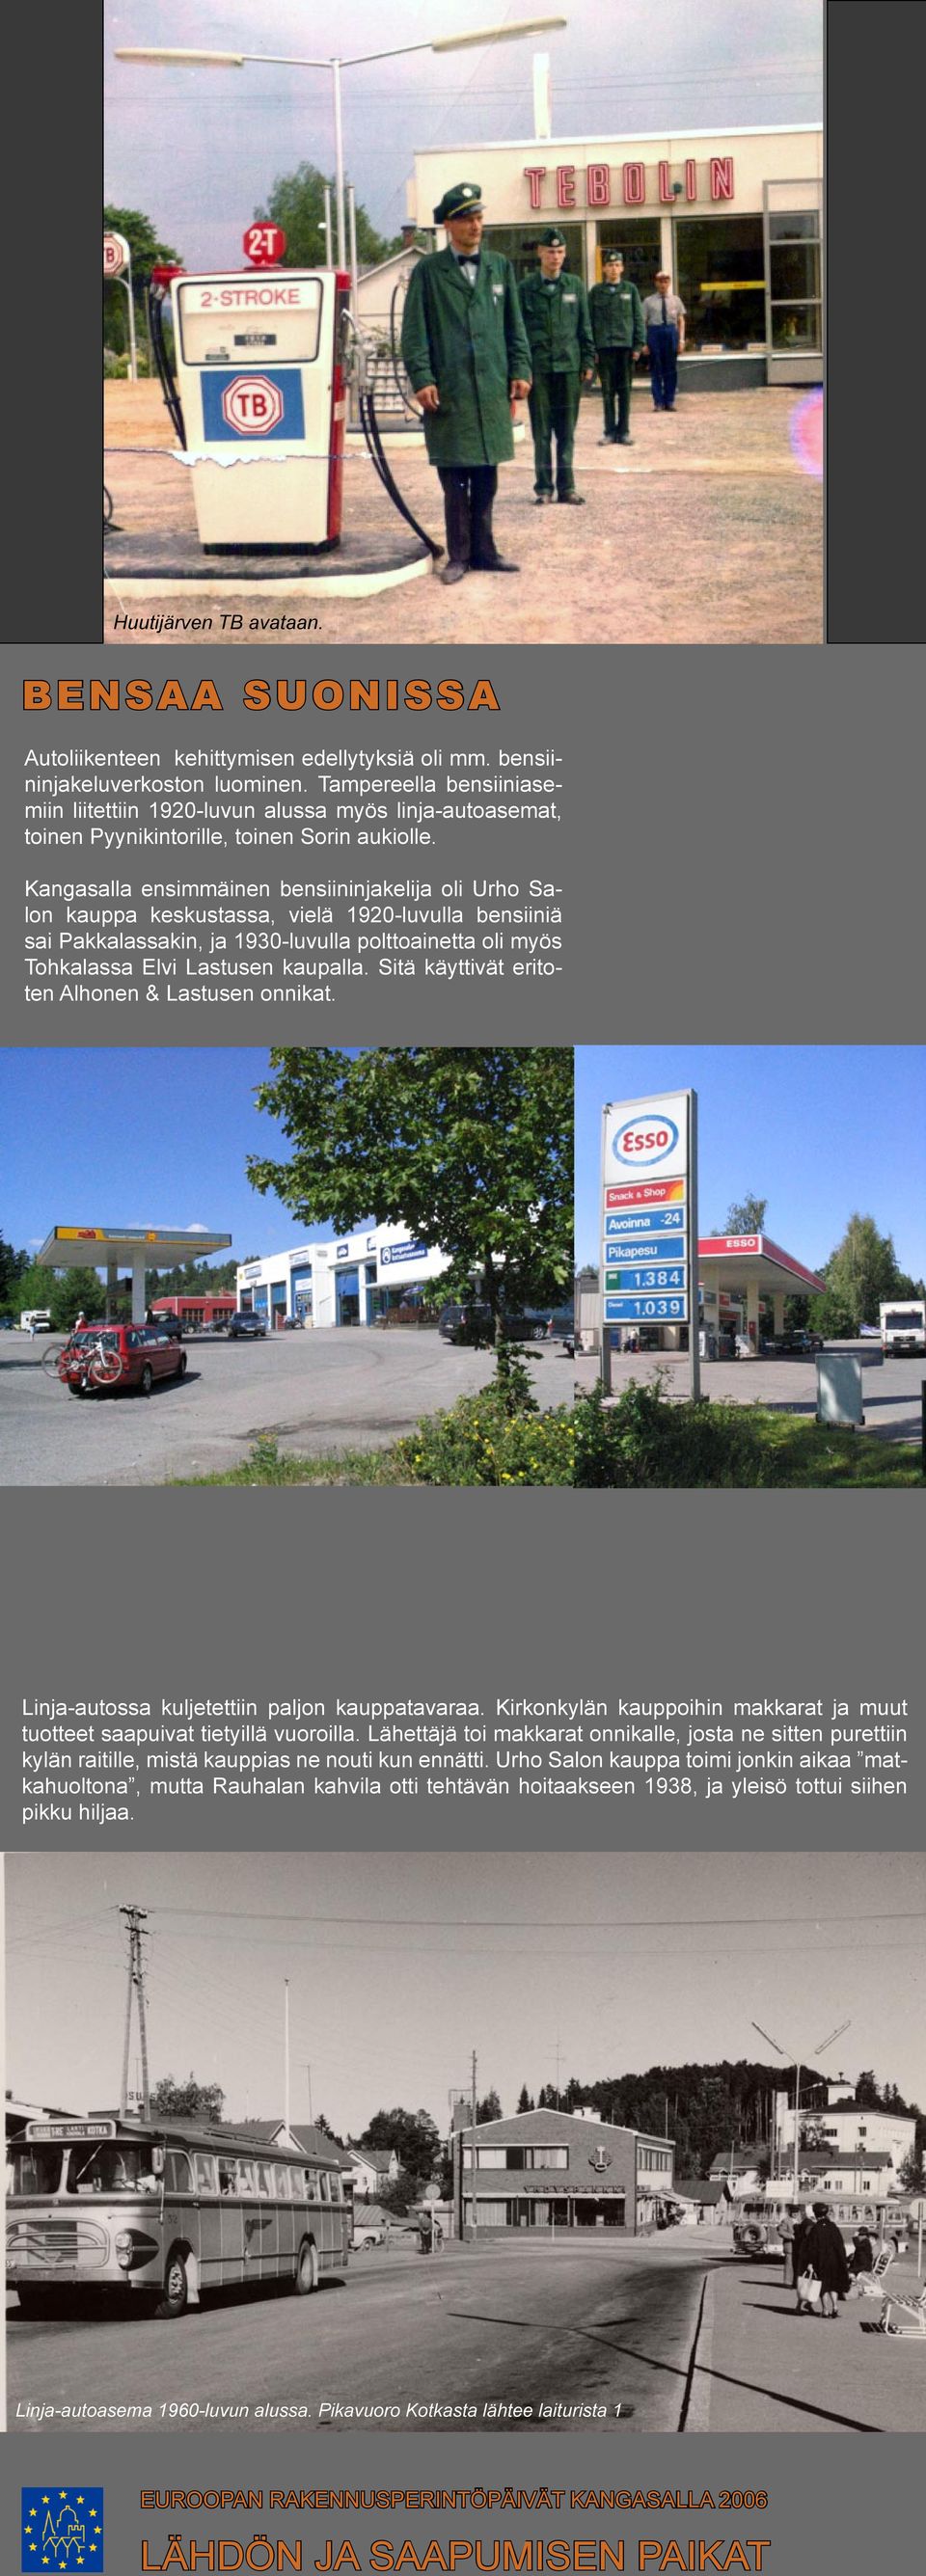 Kangasalla ensimmäinen bensiininjakelija oli Urho Salon kauppa keskustassa, vielä 1920-luvulla bensiiniä sai Pakkalassakin, ja 1930-luvulla polttoainetta oli myös Tohkalassa Elvi Lastusen kaupalla.